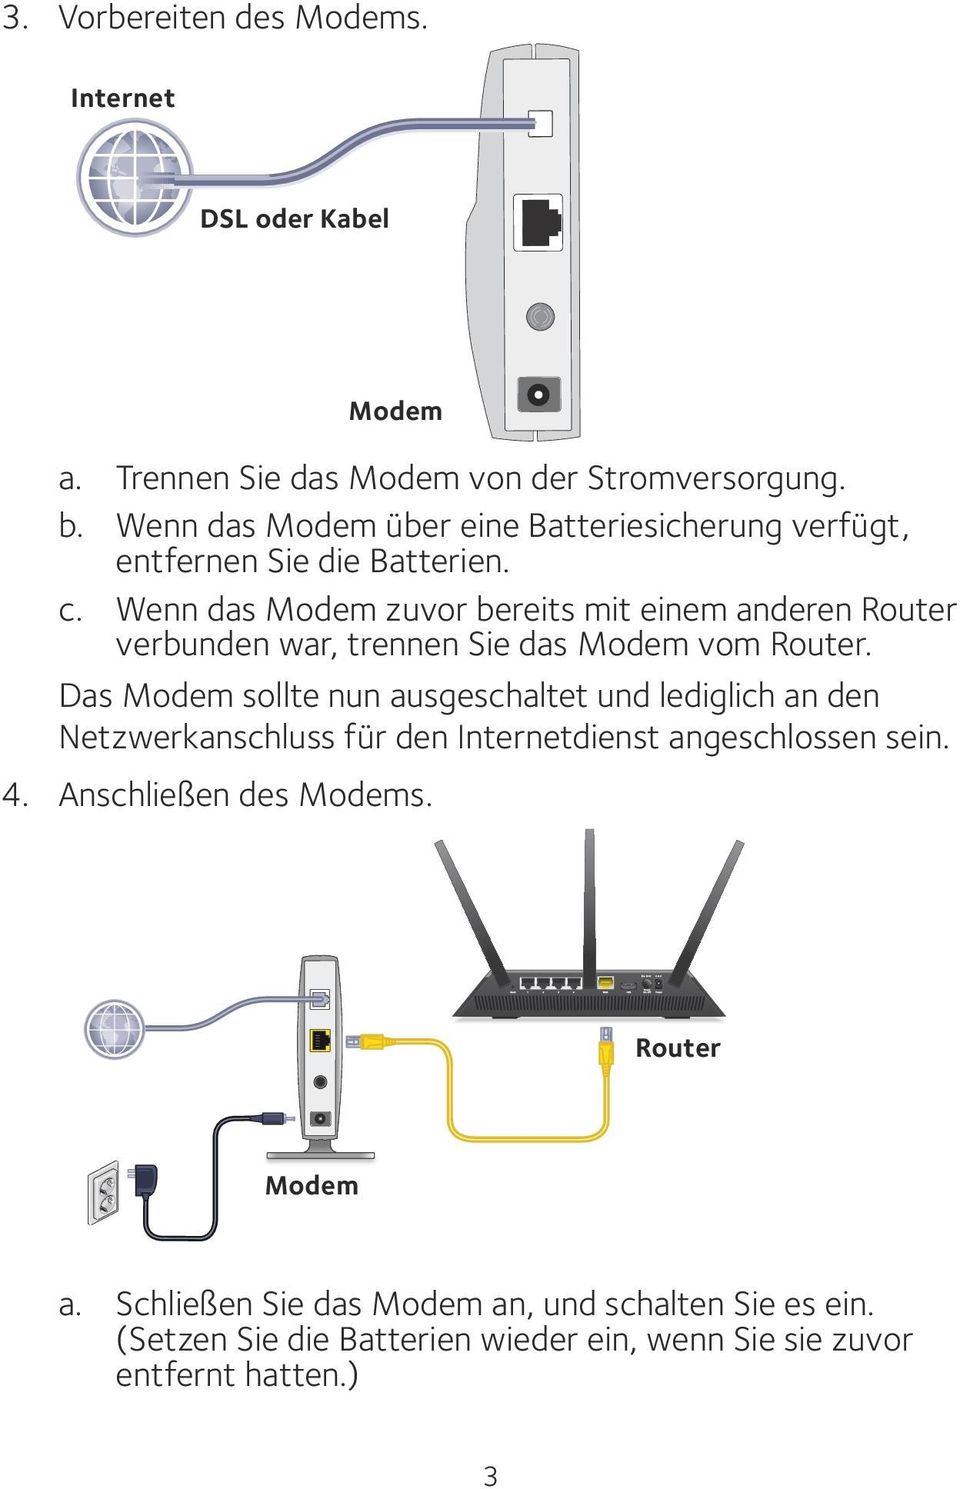 Wenn das Modem zuvor bereits mit einem anderen Router verbunden war, trennen Sie das Modem vom Router.